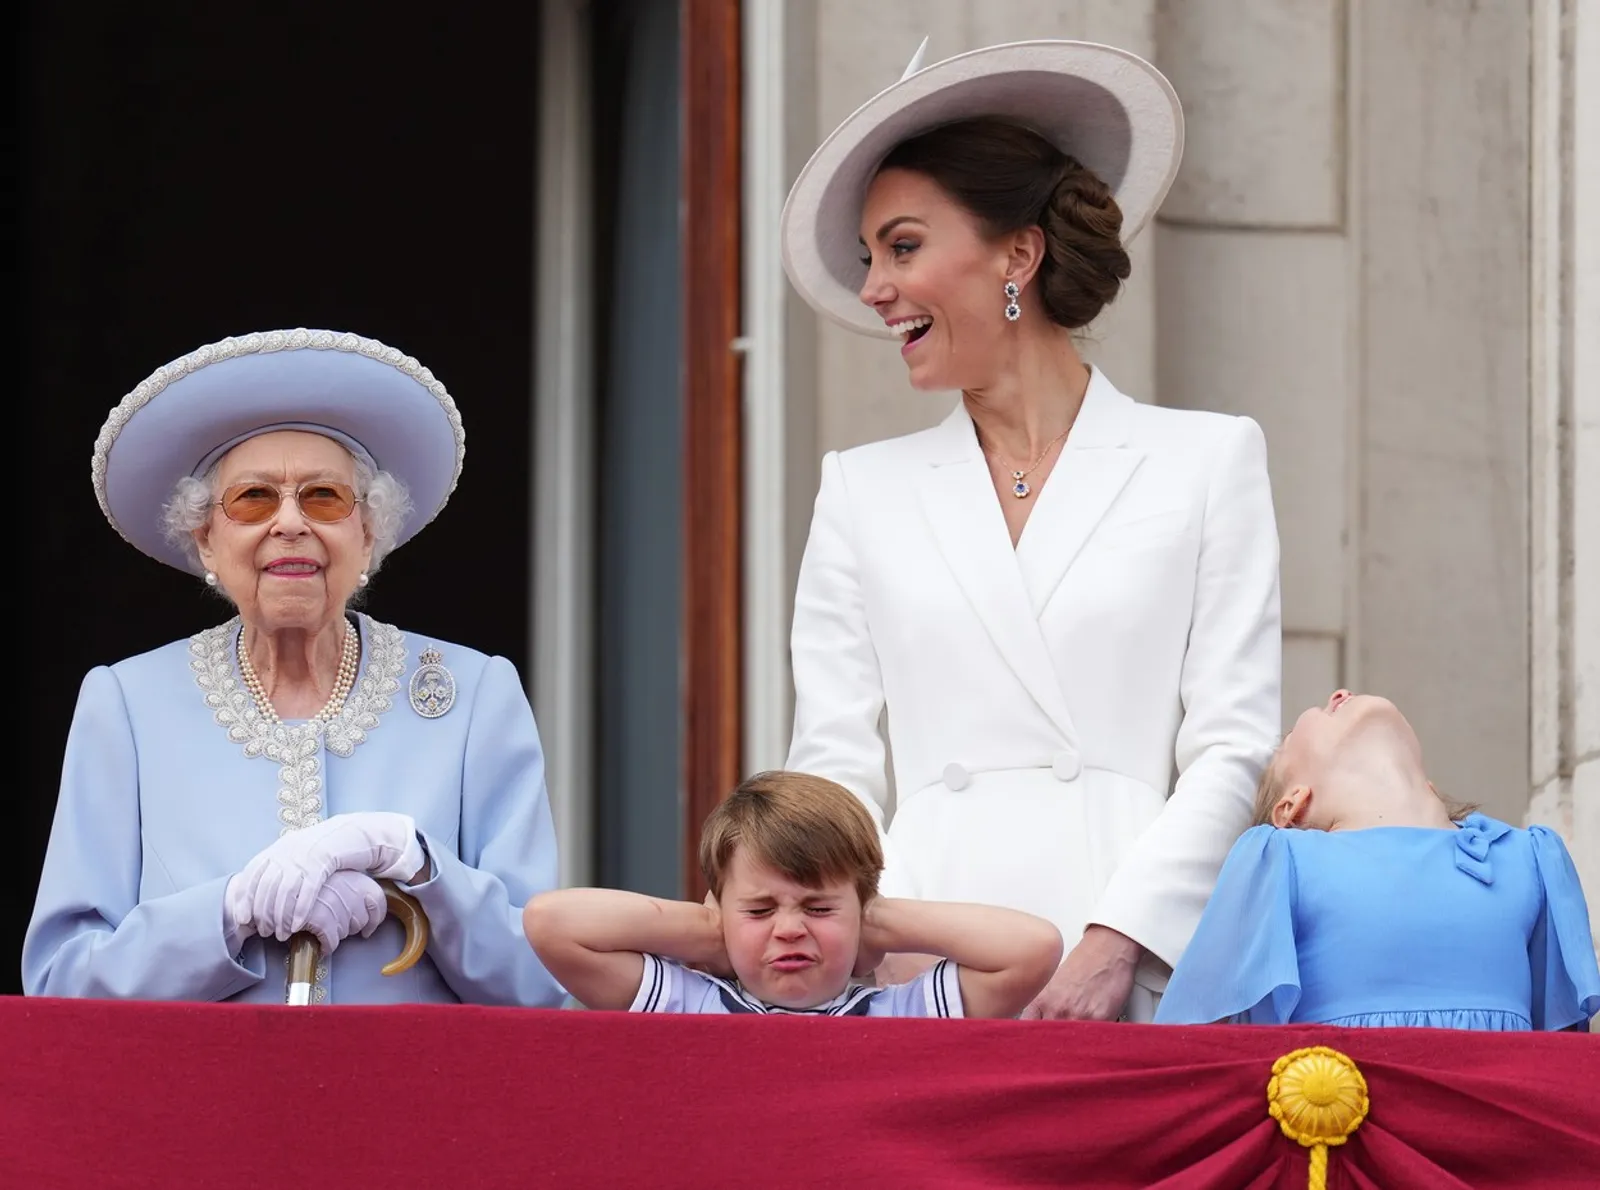 Kraljica Elizabeta II na proslavi s unucima i Kate Middleton